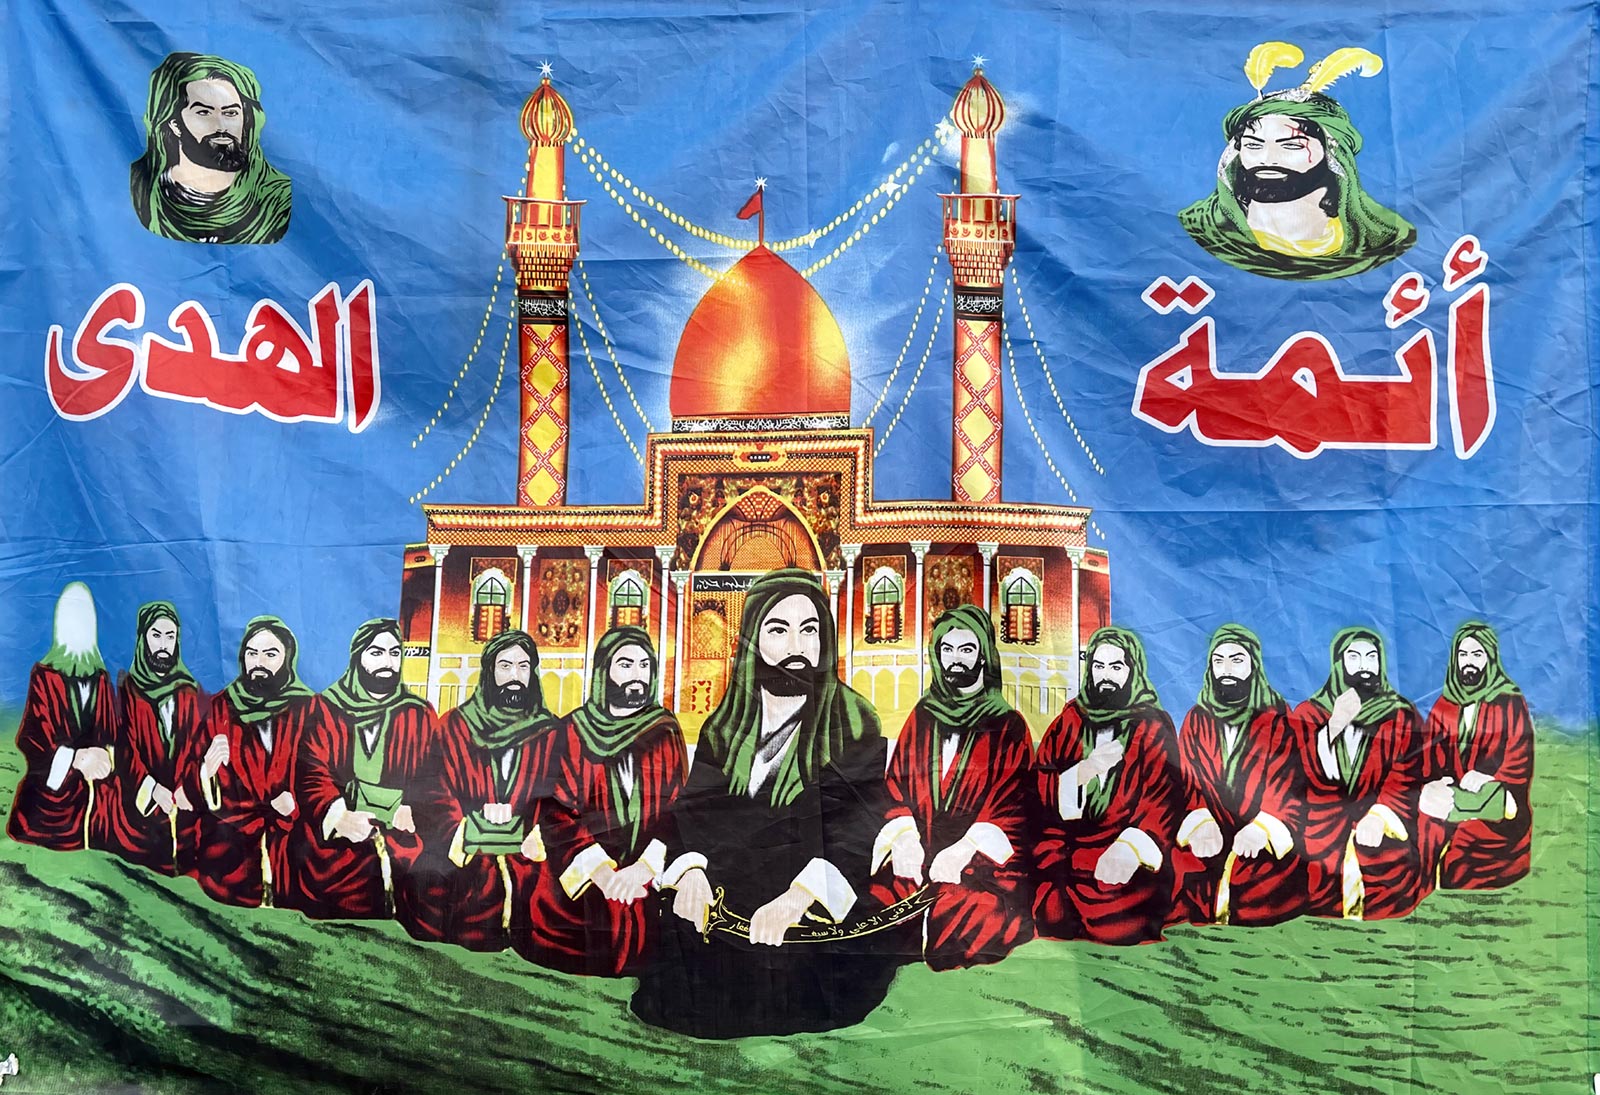 Pintura dos Doze Imames Shia, com Imam Ali no centro